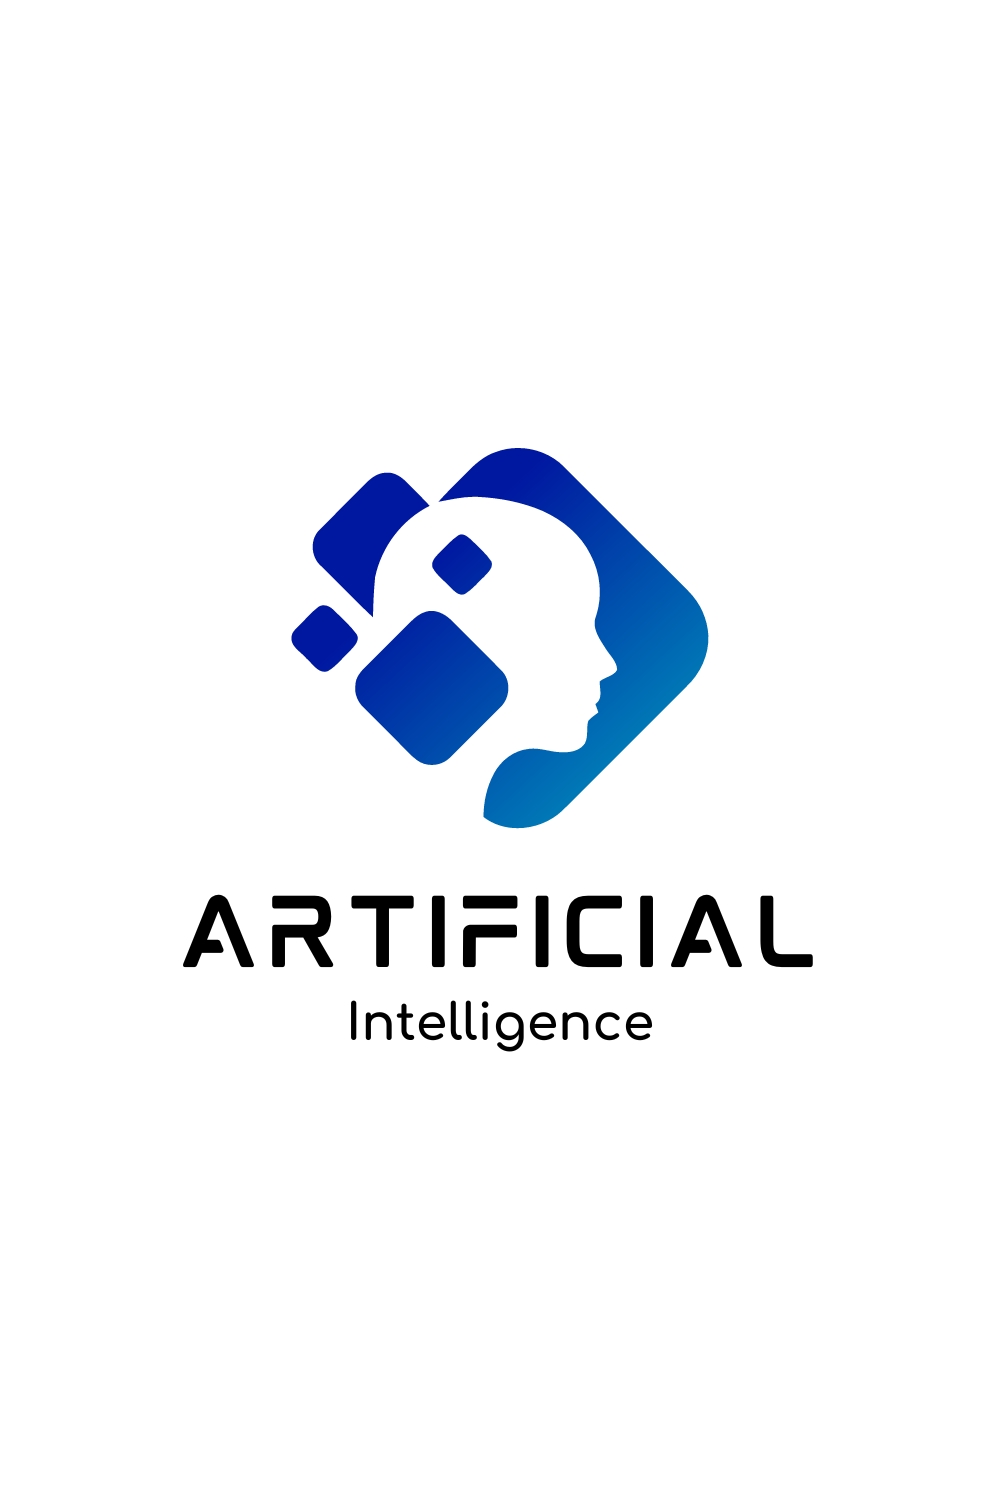 Artificial intelligence logo - Stock Illustration [64549923] - PIXTA